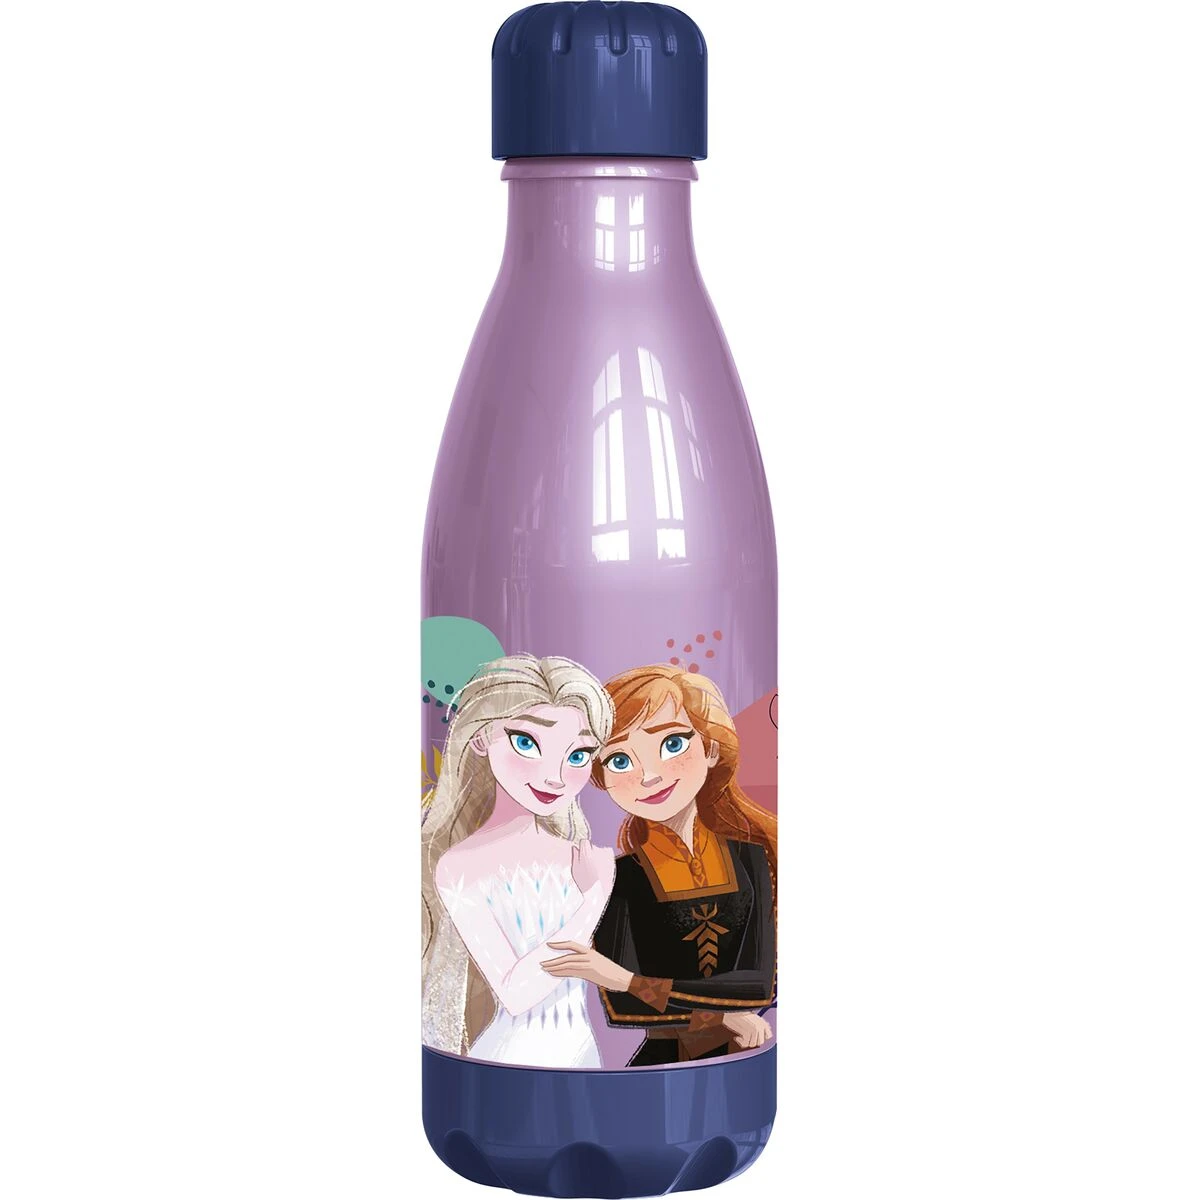 Paarse fles met animatie vrouwfiguren